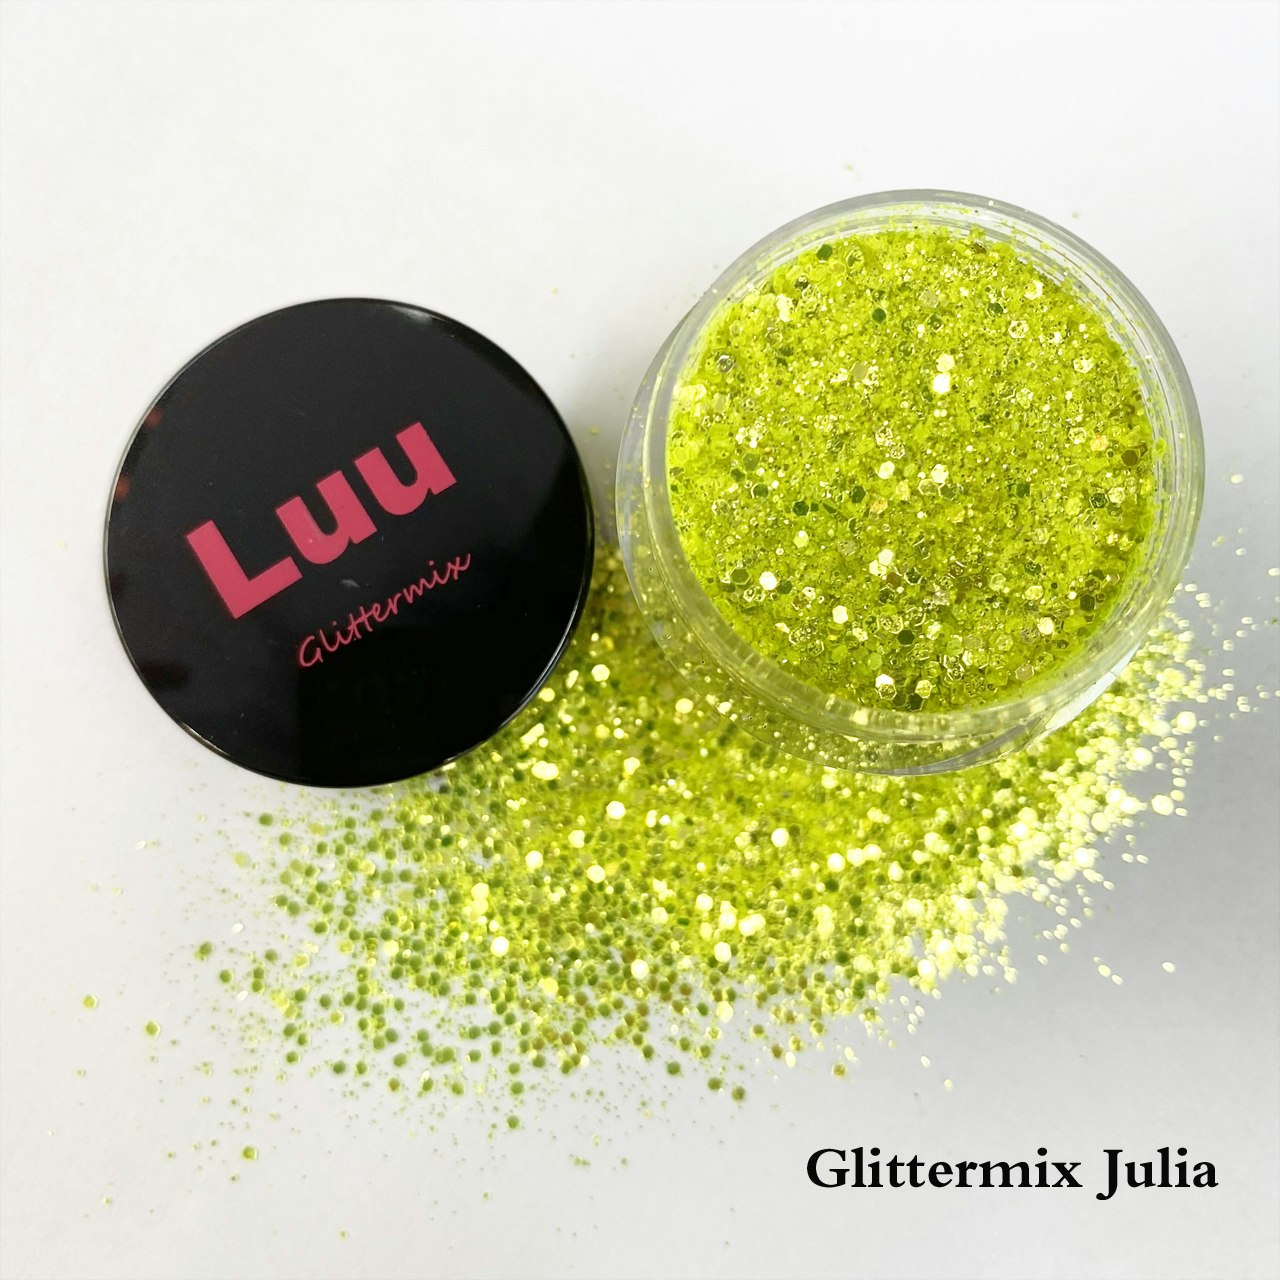 Julia glittermix 15g